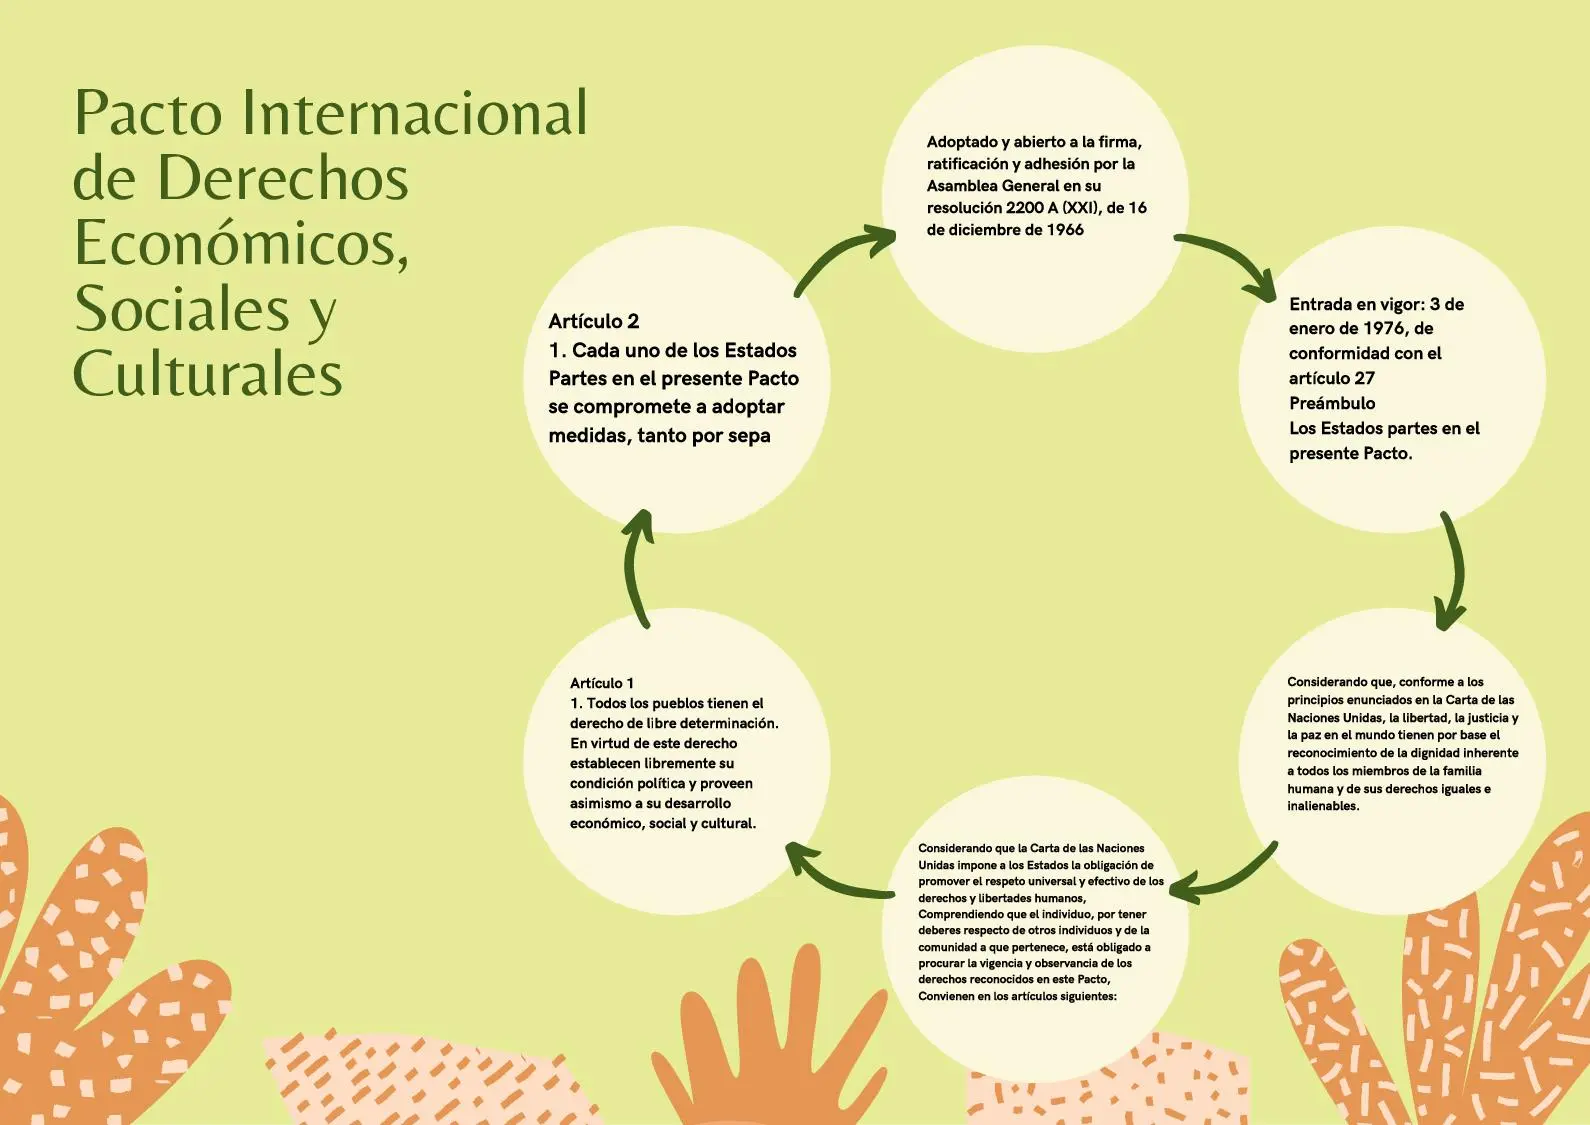 derechos sociales economicos y culturales resumen - Cuál es el proposito del Pacto Internacional de Derechos Económicos Sociales y Culturales